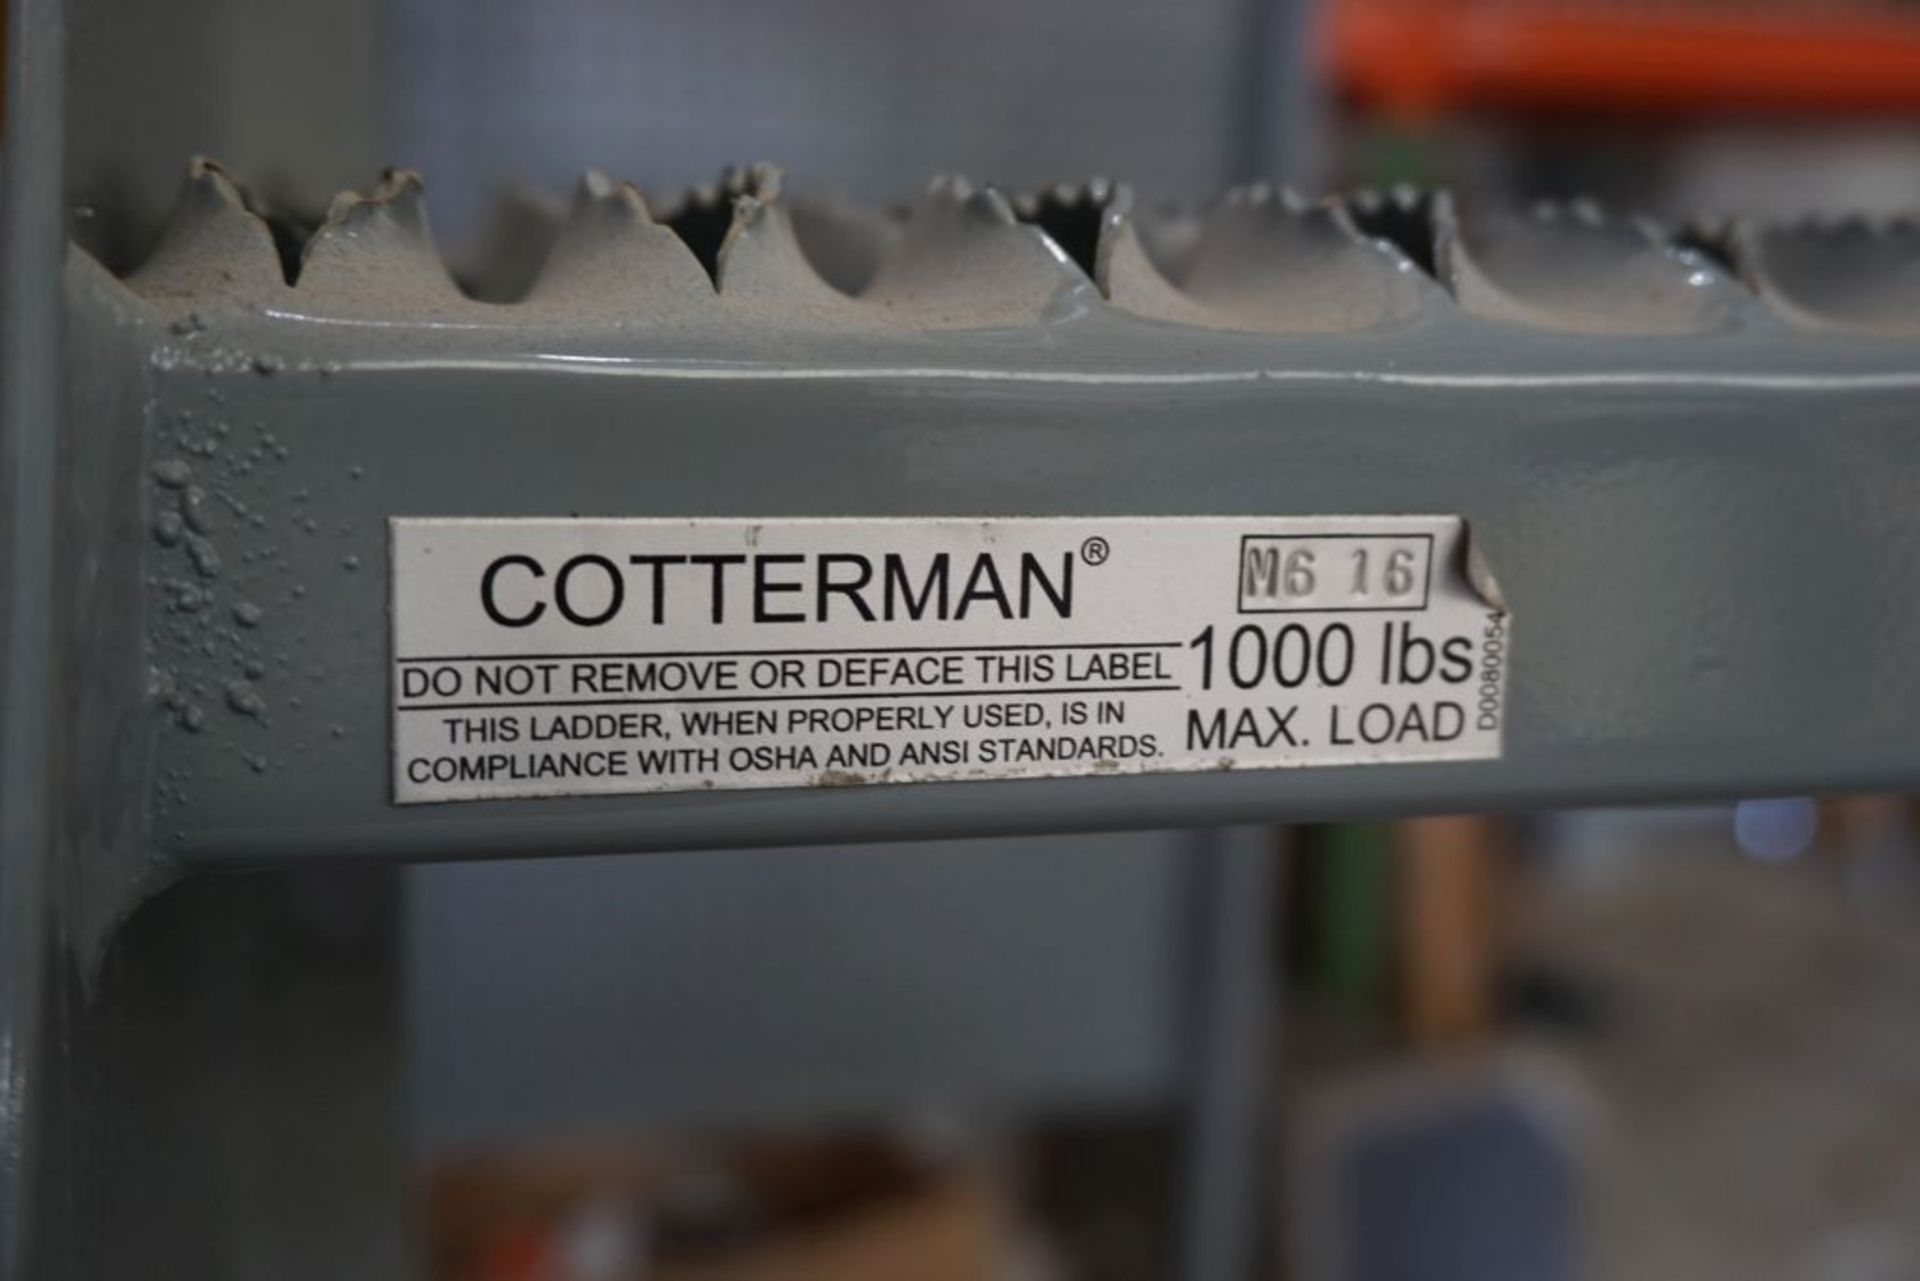 Cotterman Workmaster Rolling Steel Ladder | Model No. M6-16; 1,000 lb Load Rating - Image 5 of 5